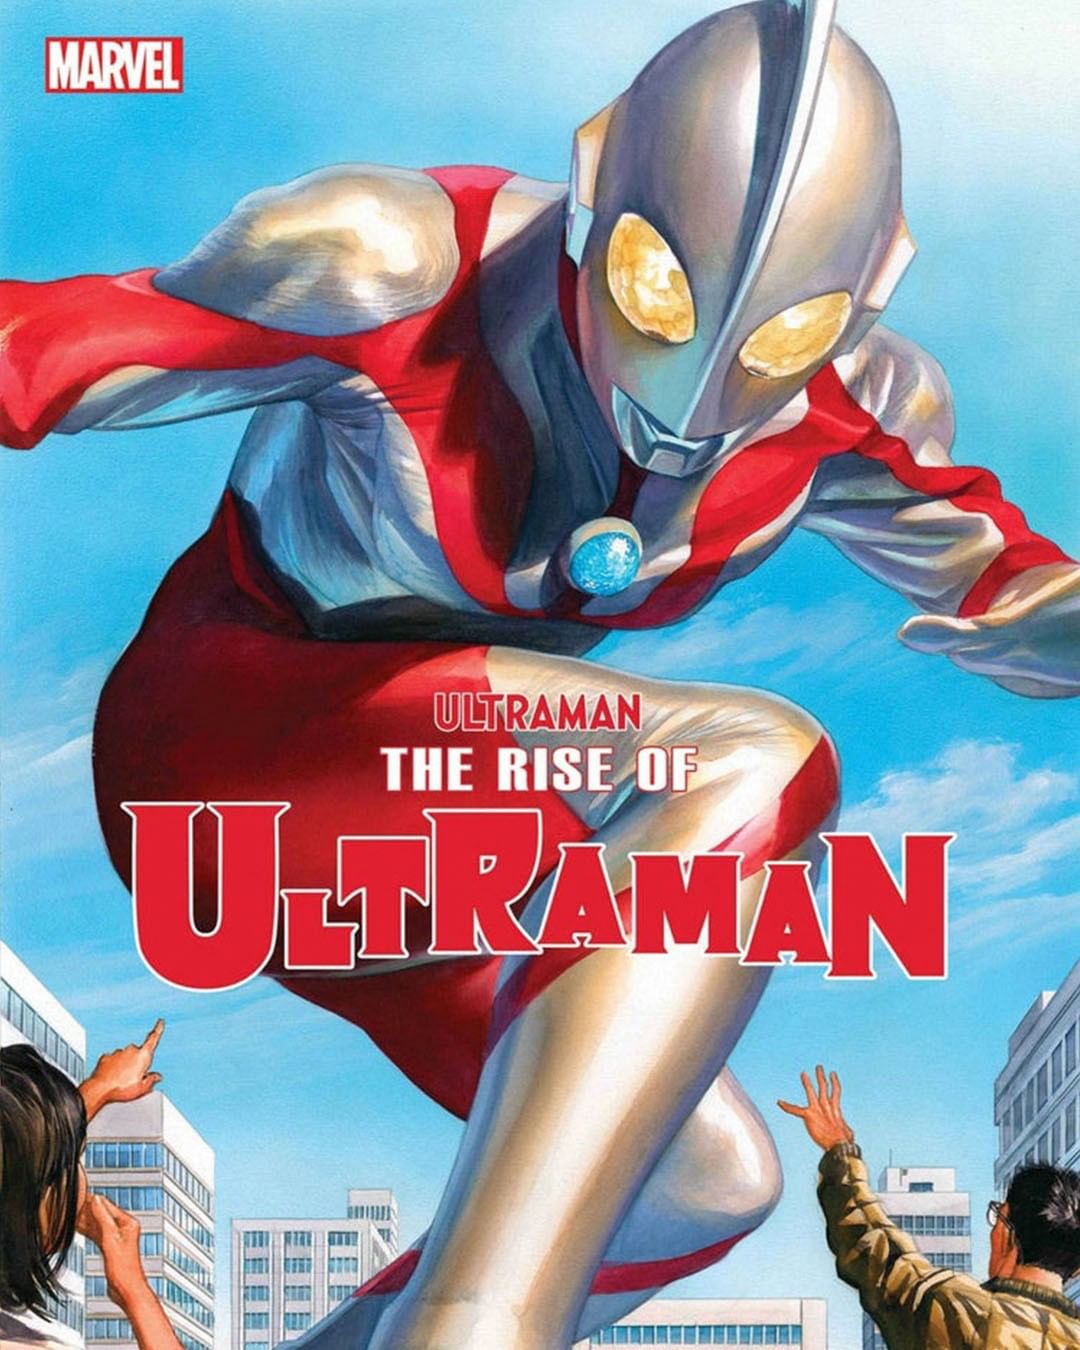 Siêu nhân Ultraman Marvel sẽ đưa bạn vào một thế giới hoàn toàn khác, nơi sức mạnh phi thường và anh hùng không ngừng chiến đấu để bảo vệ thế giới. Đây là những hình ảnh đáng xem và truyền cảm hứng cho mọi lứa tuổi.